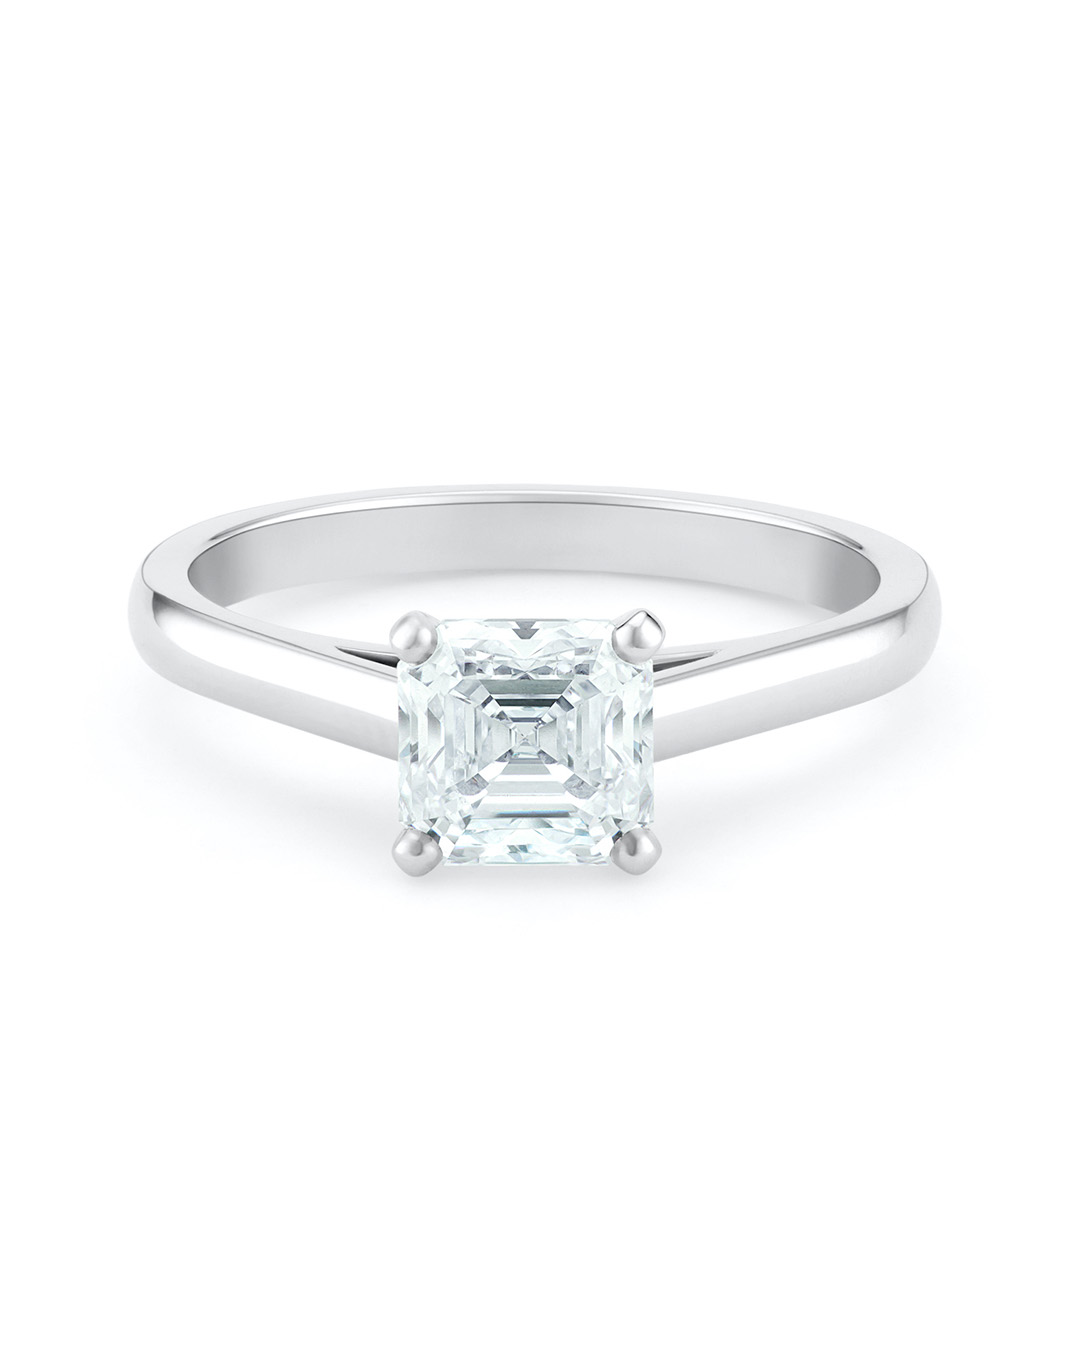 royal engagement rings diamonds wedding inspiration Asscher-cut 